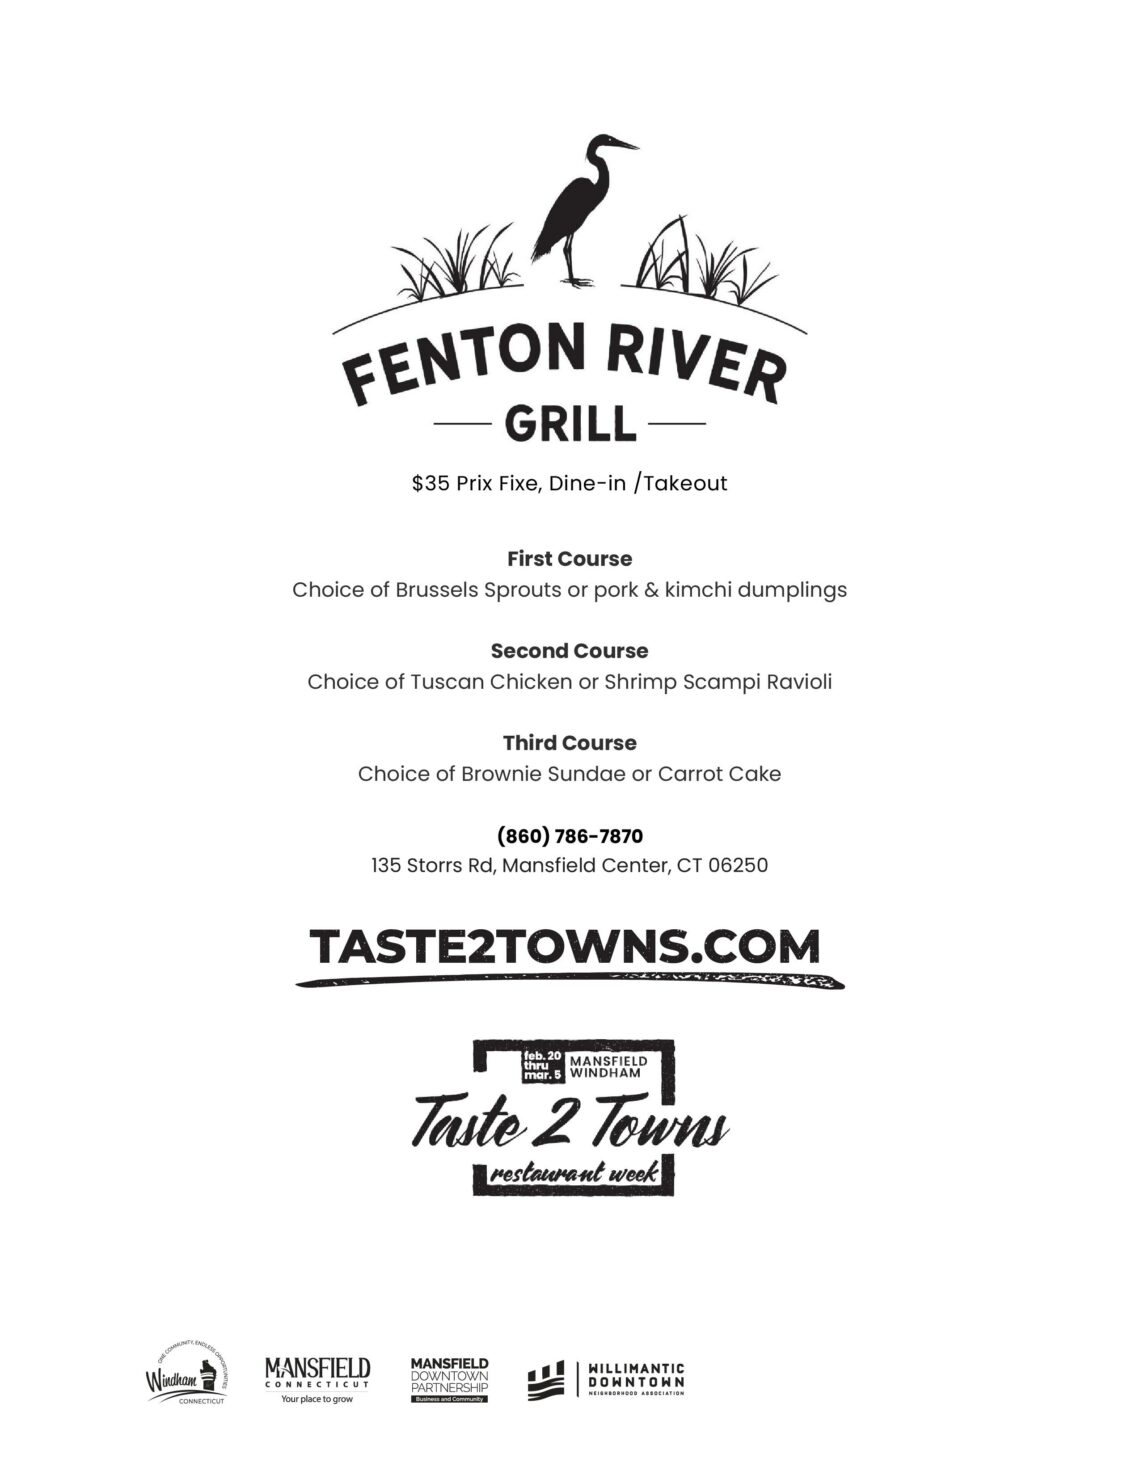 Fenton River Grill Mansfield & Windham Restaurant Week Connecticut